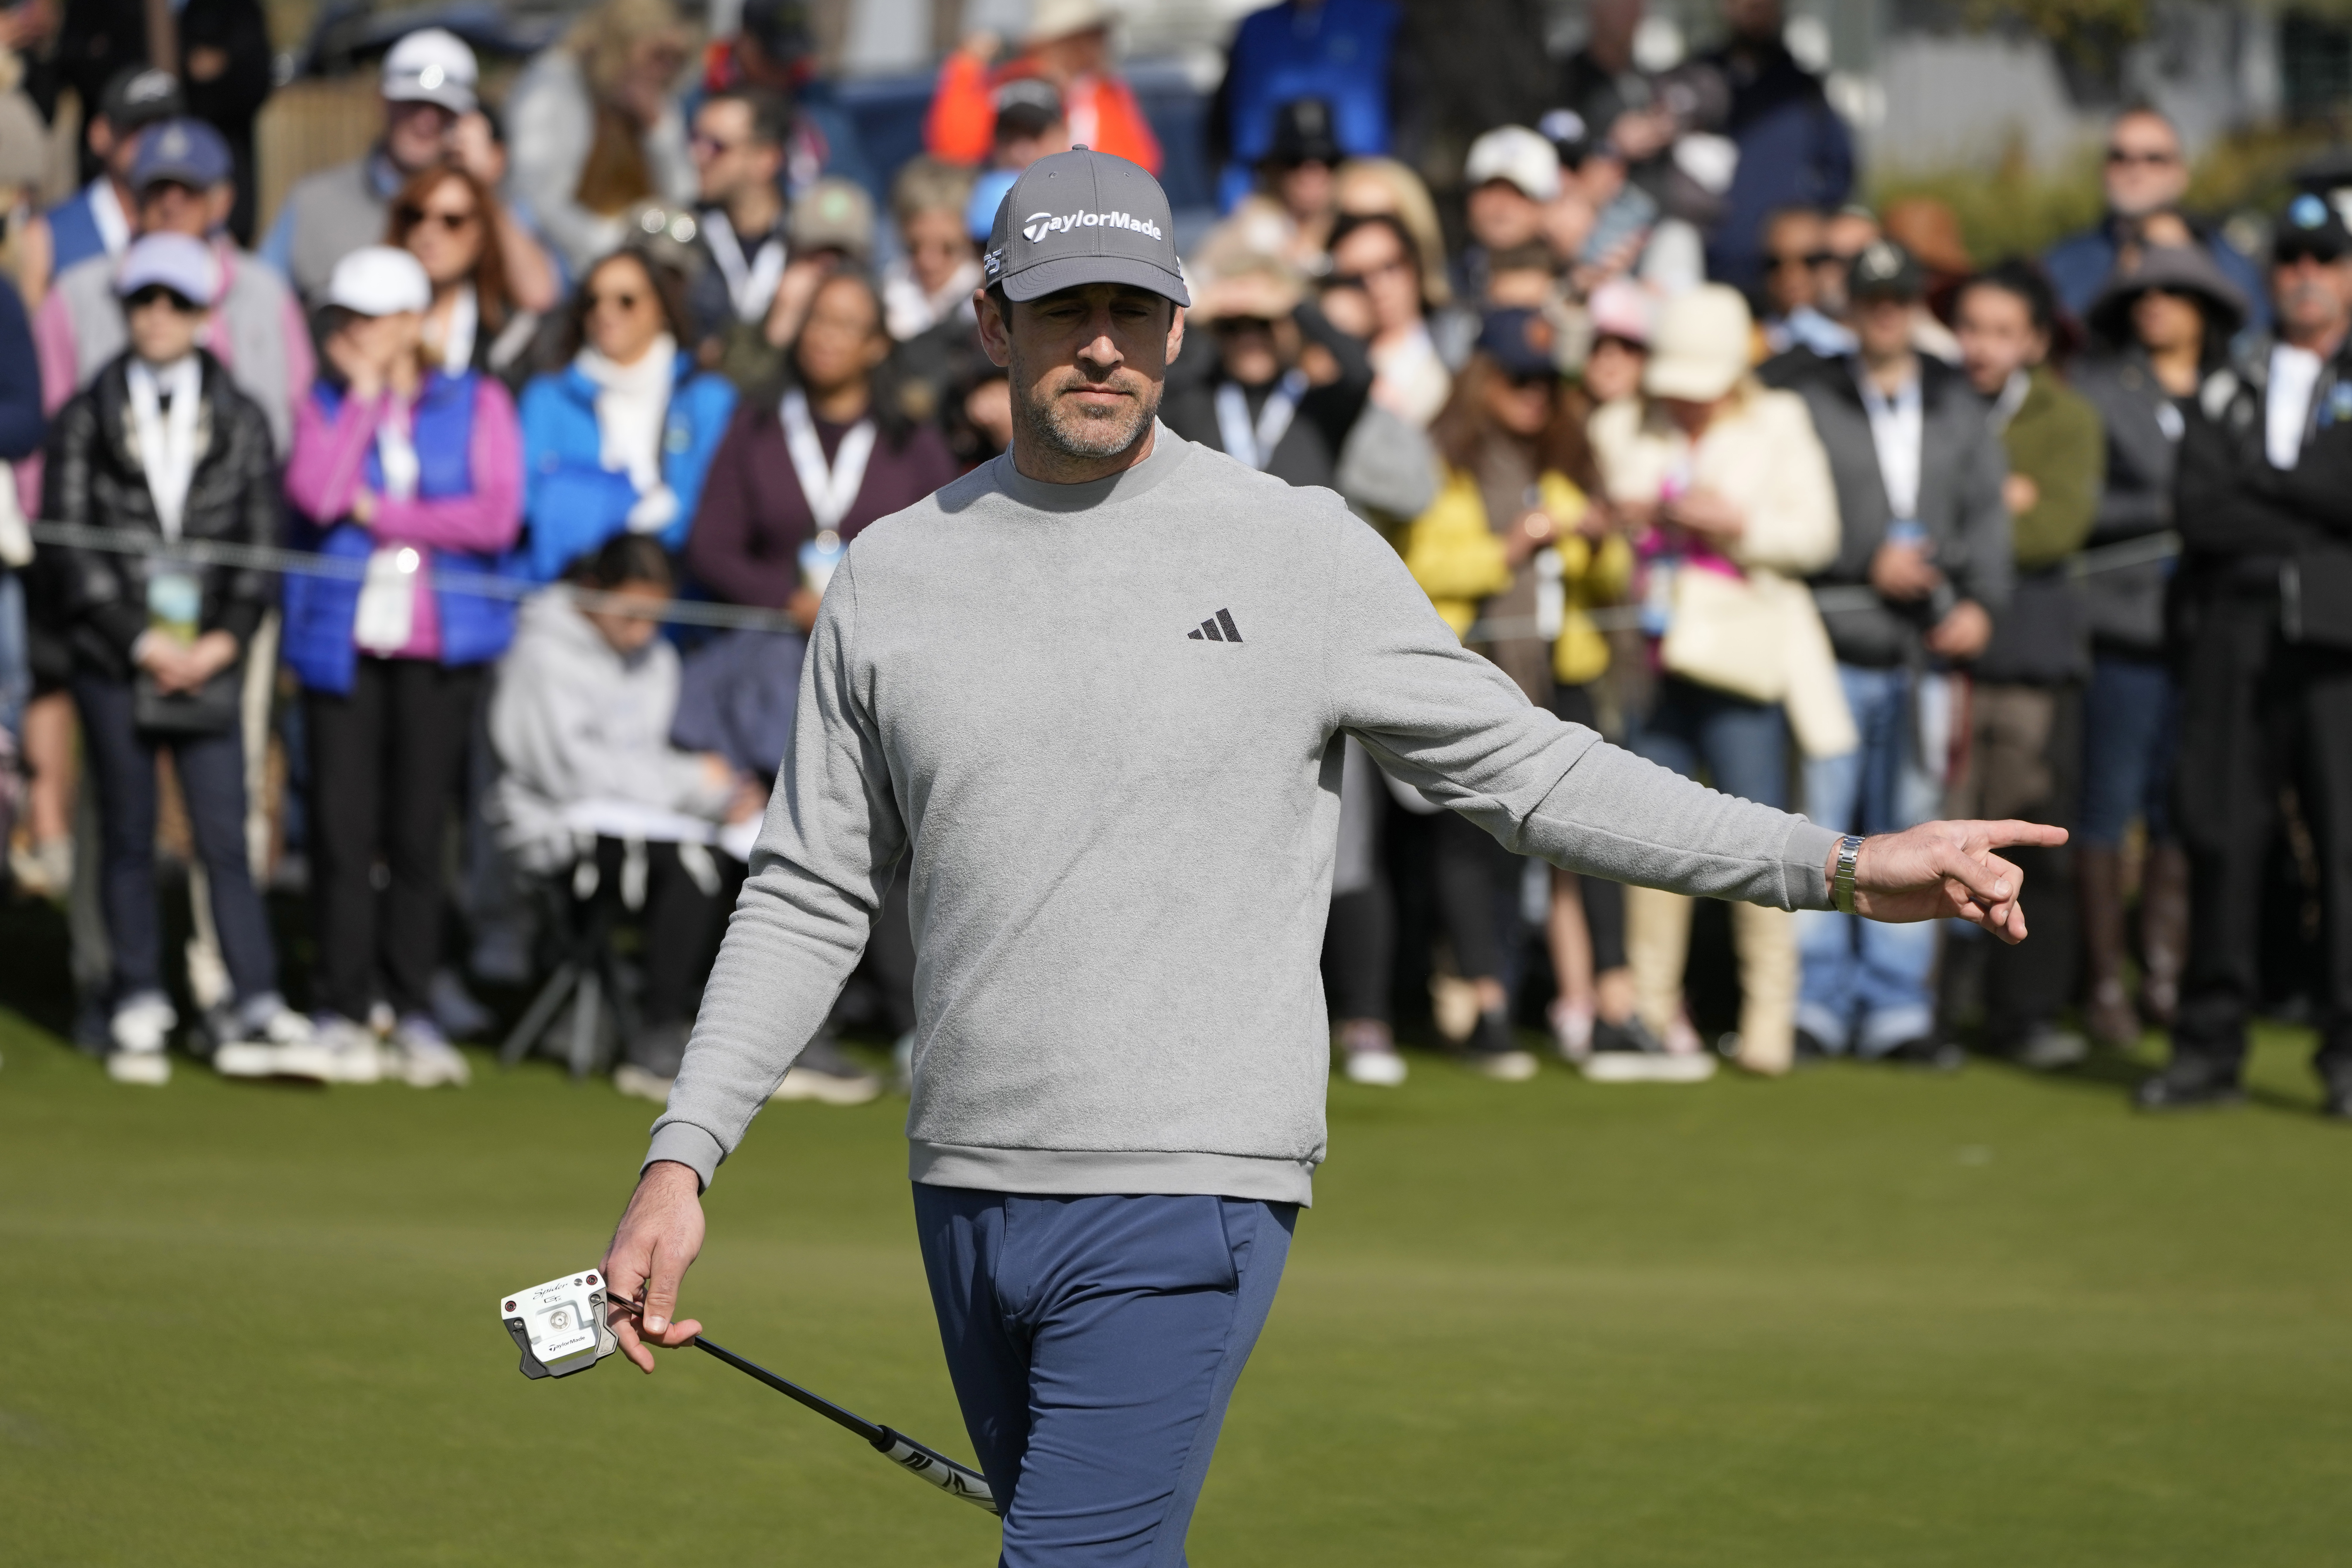 Jon Rahm raves about Gareth Bale's golf game at PGA Tour pro-am